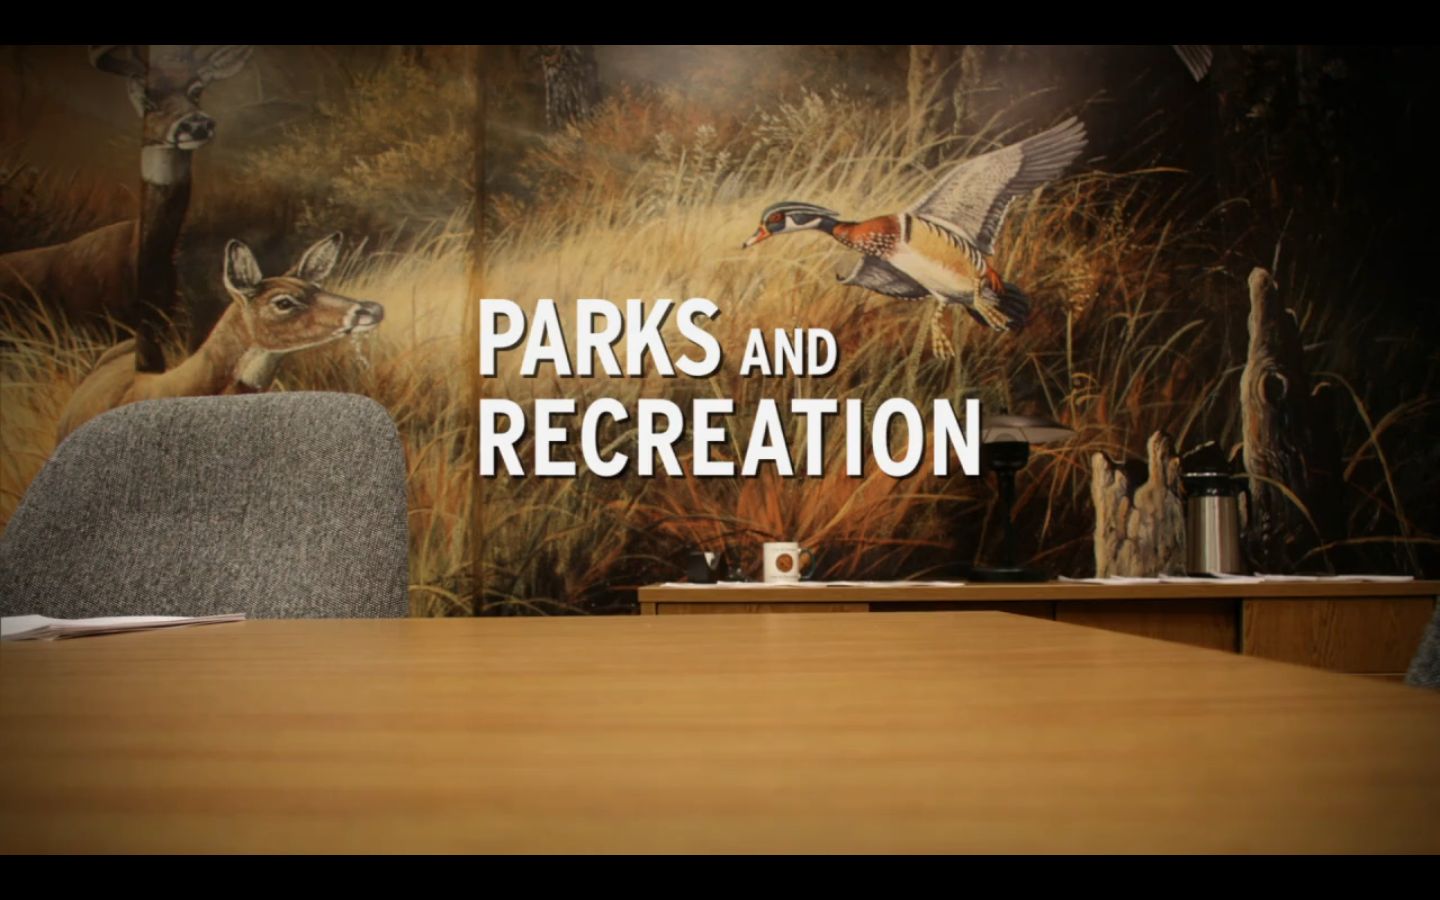 公園とrecの壁紙,テキスト,フォント,野生動物,写真のキャプション,木材